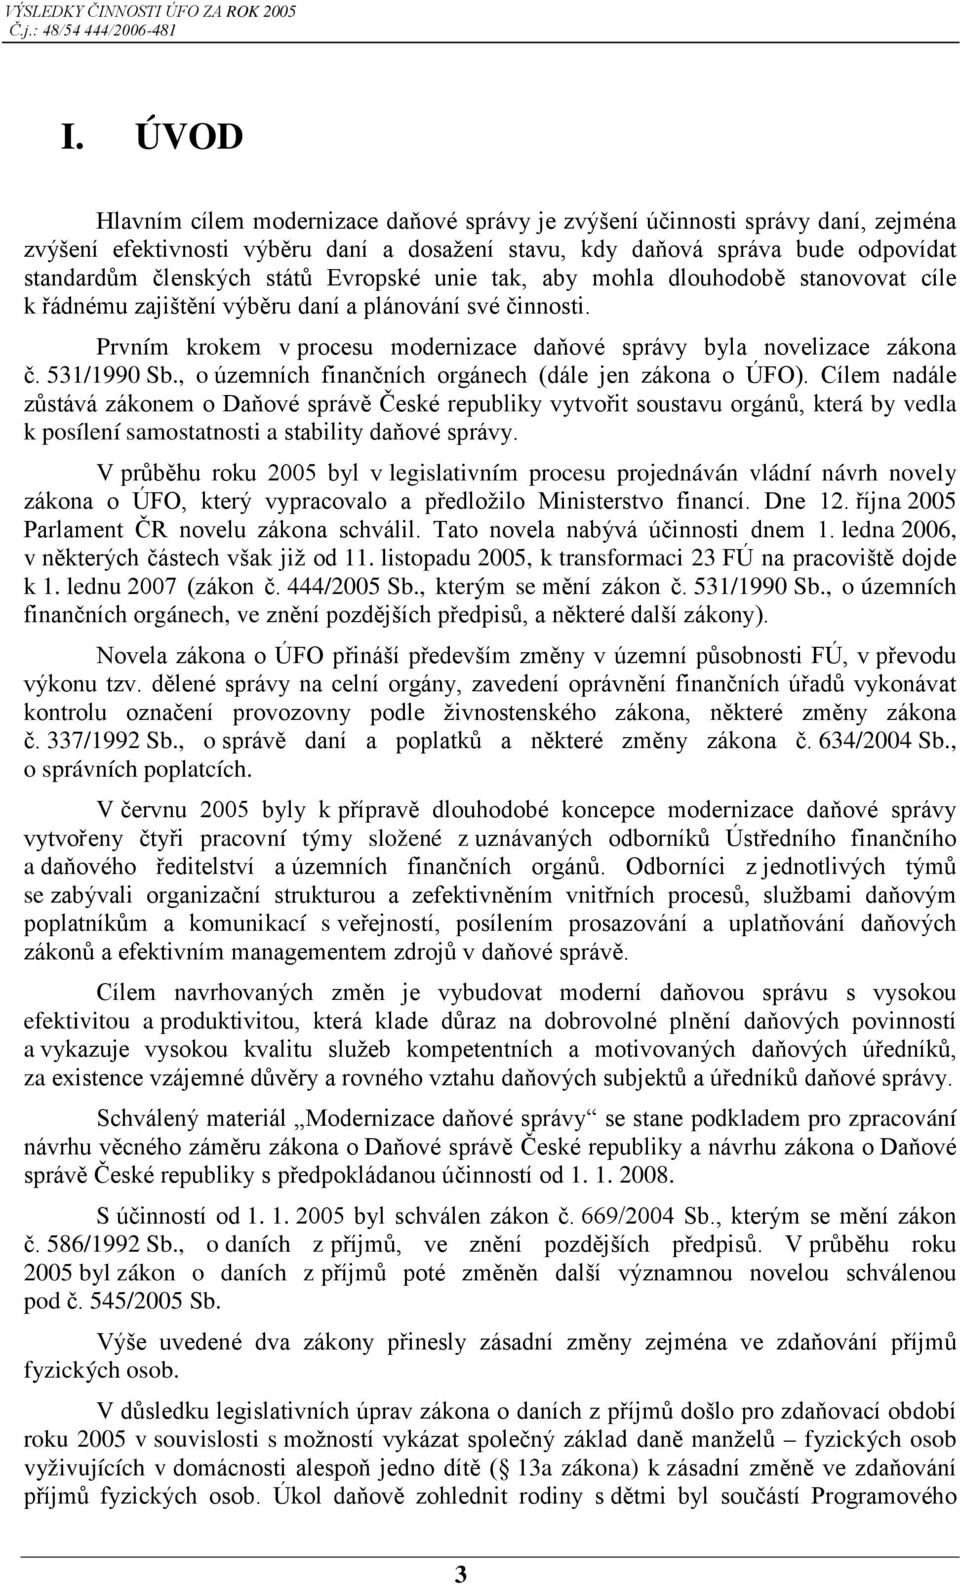 531/1990 Sb., o územních finančních orgánech (dále jen zákona o ÚFO).